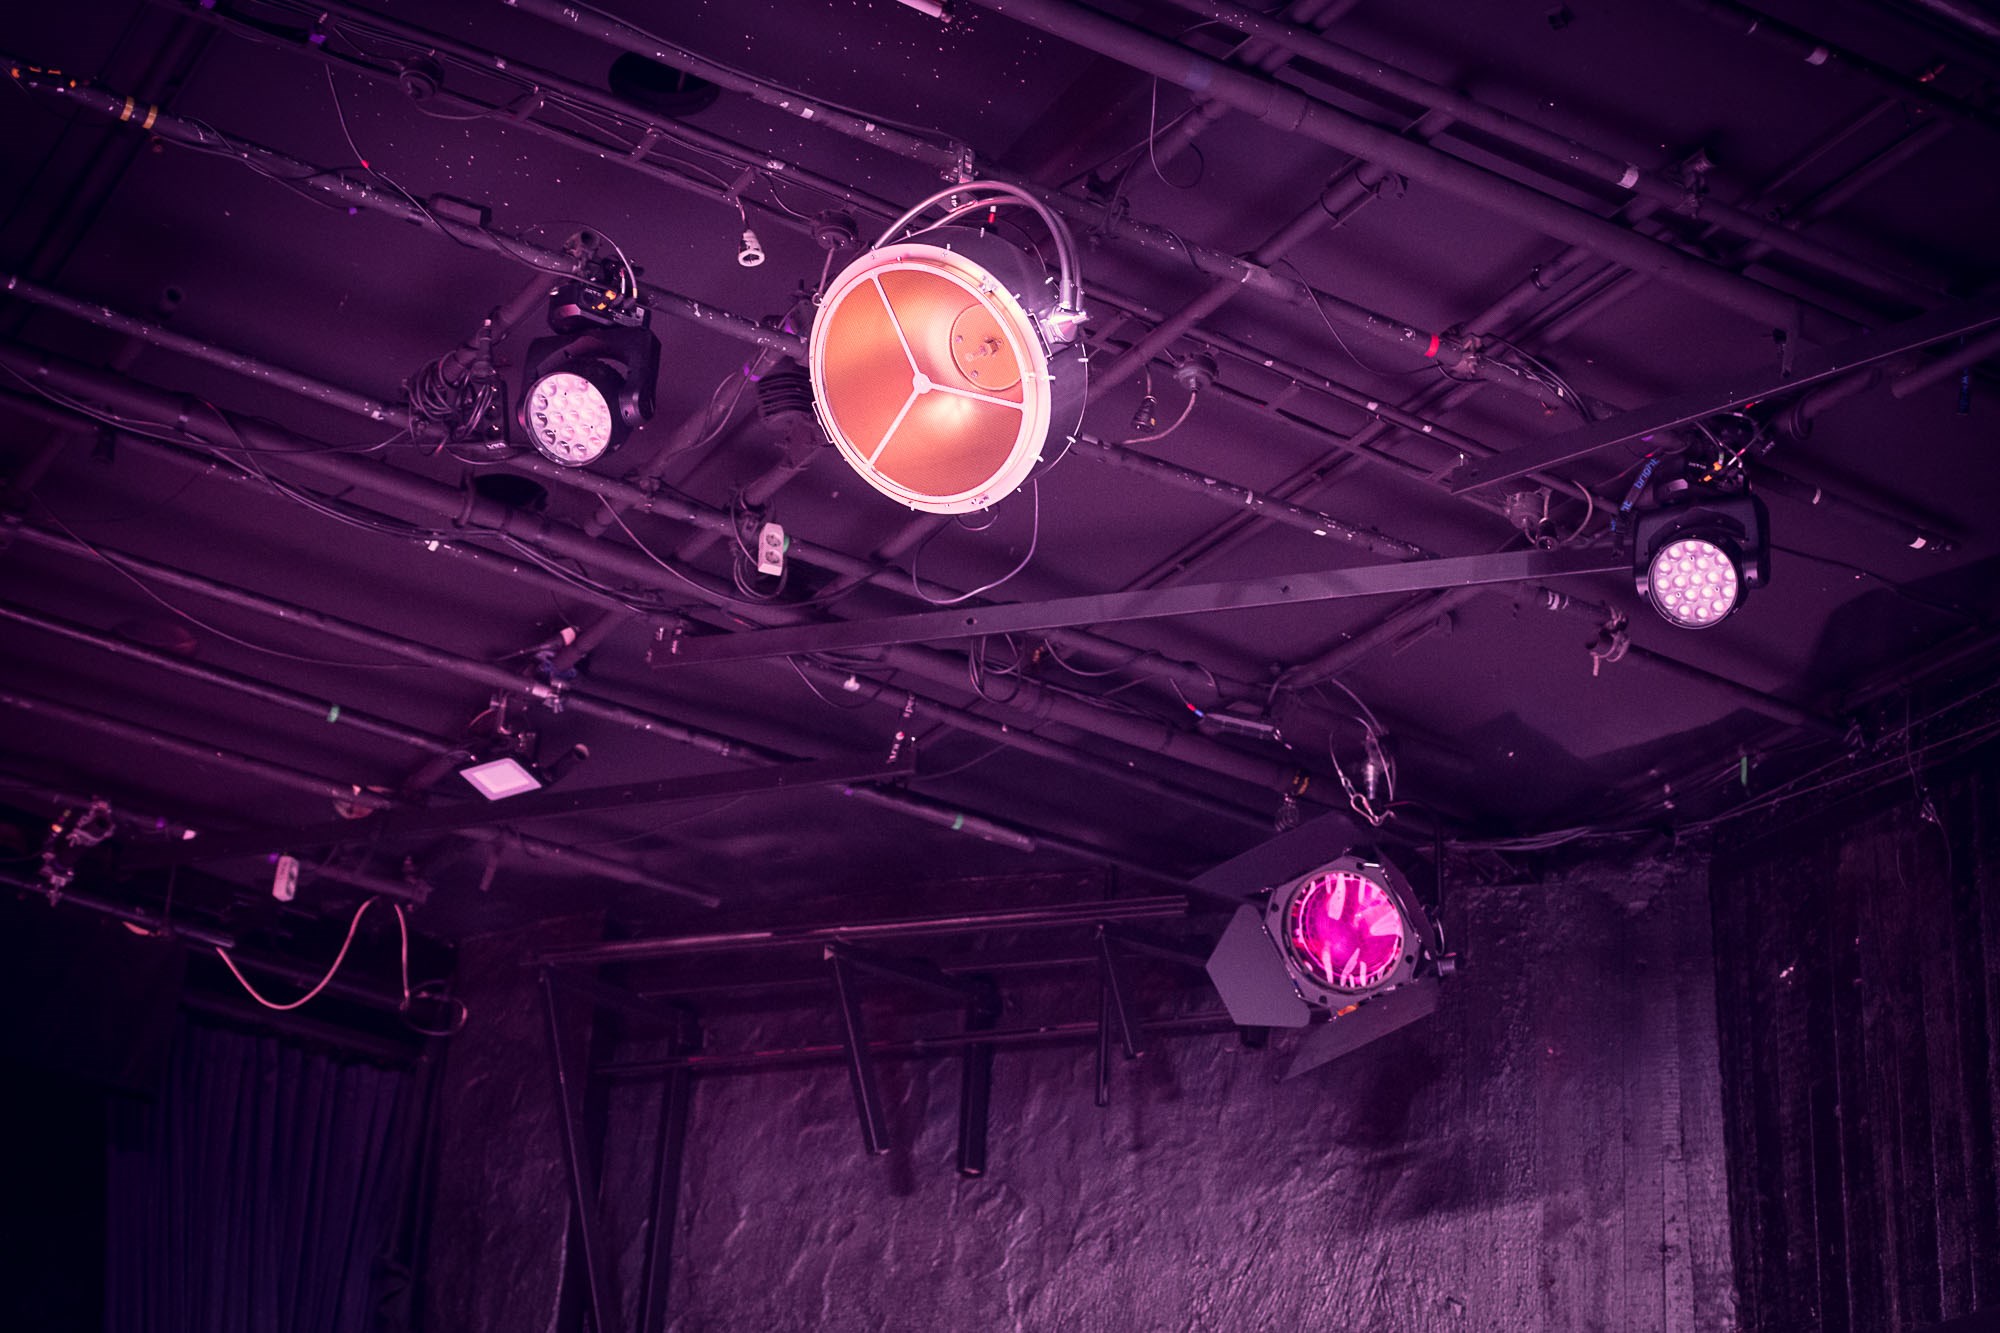 Taket och hela rummet är upplyst i lila. En strålkastare står i fokus som brinner i lätt rosa ljus. 